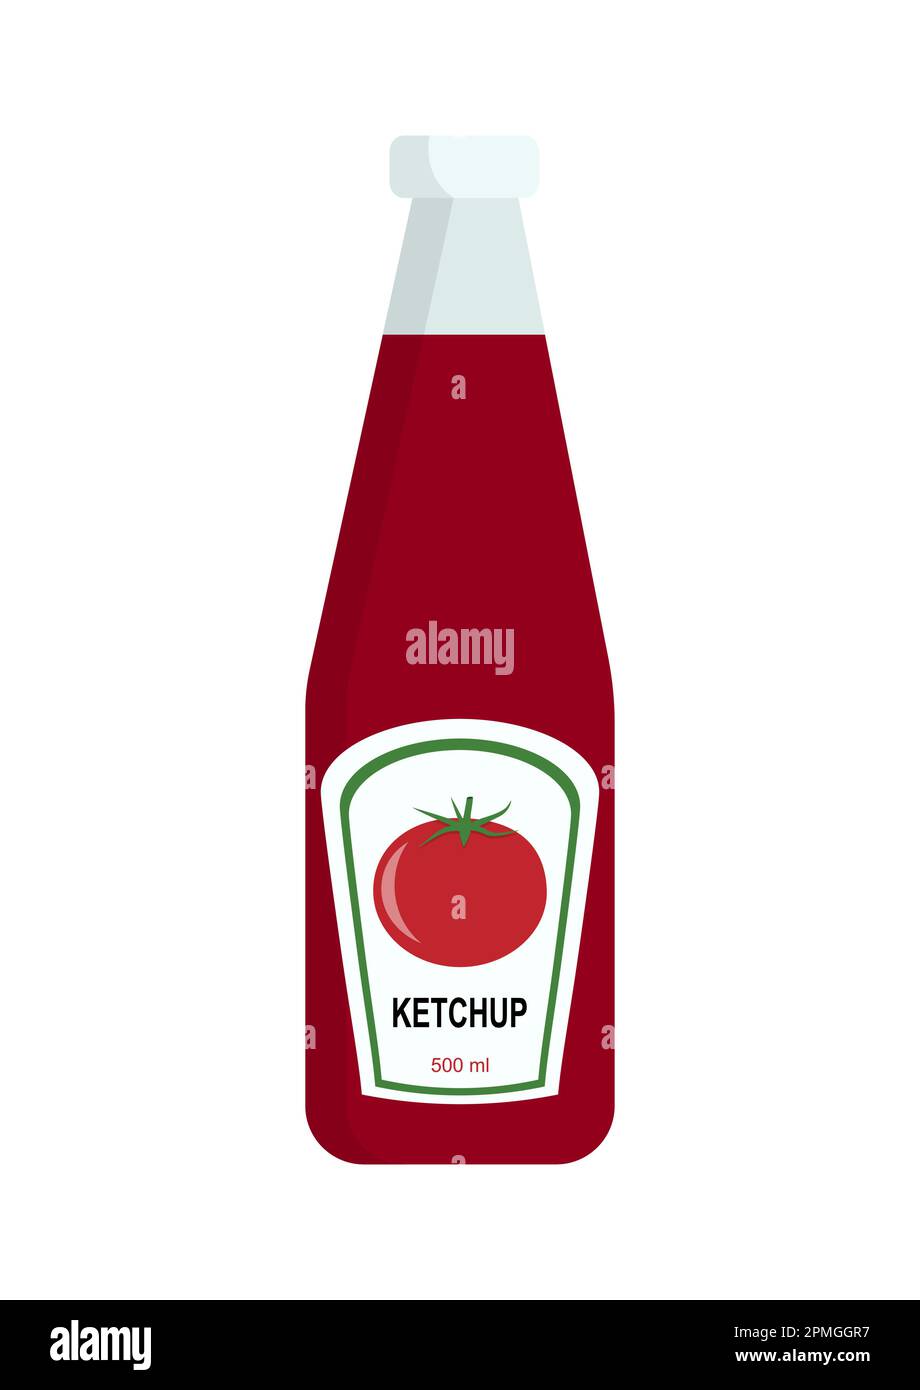 Ketchup-Flasche isoliert auf weißem Hintergrund. Vektor-Ketchup-Ikone, flaches Design Stock Vektor